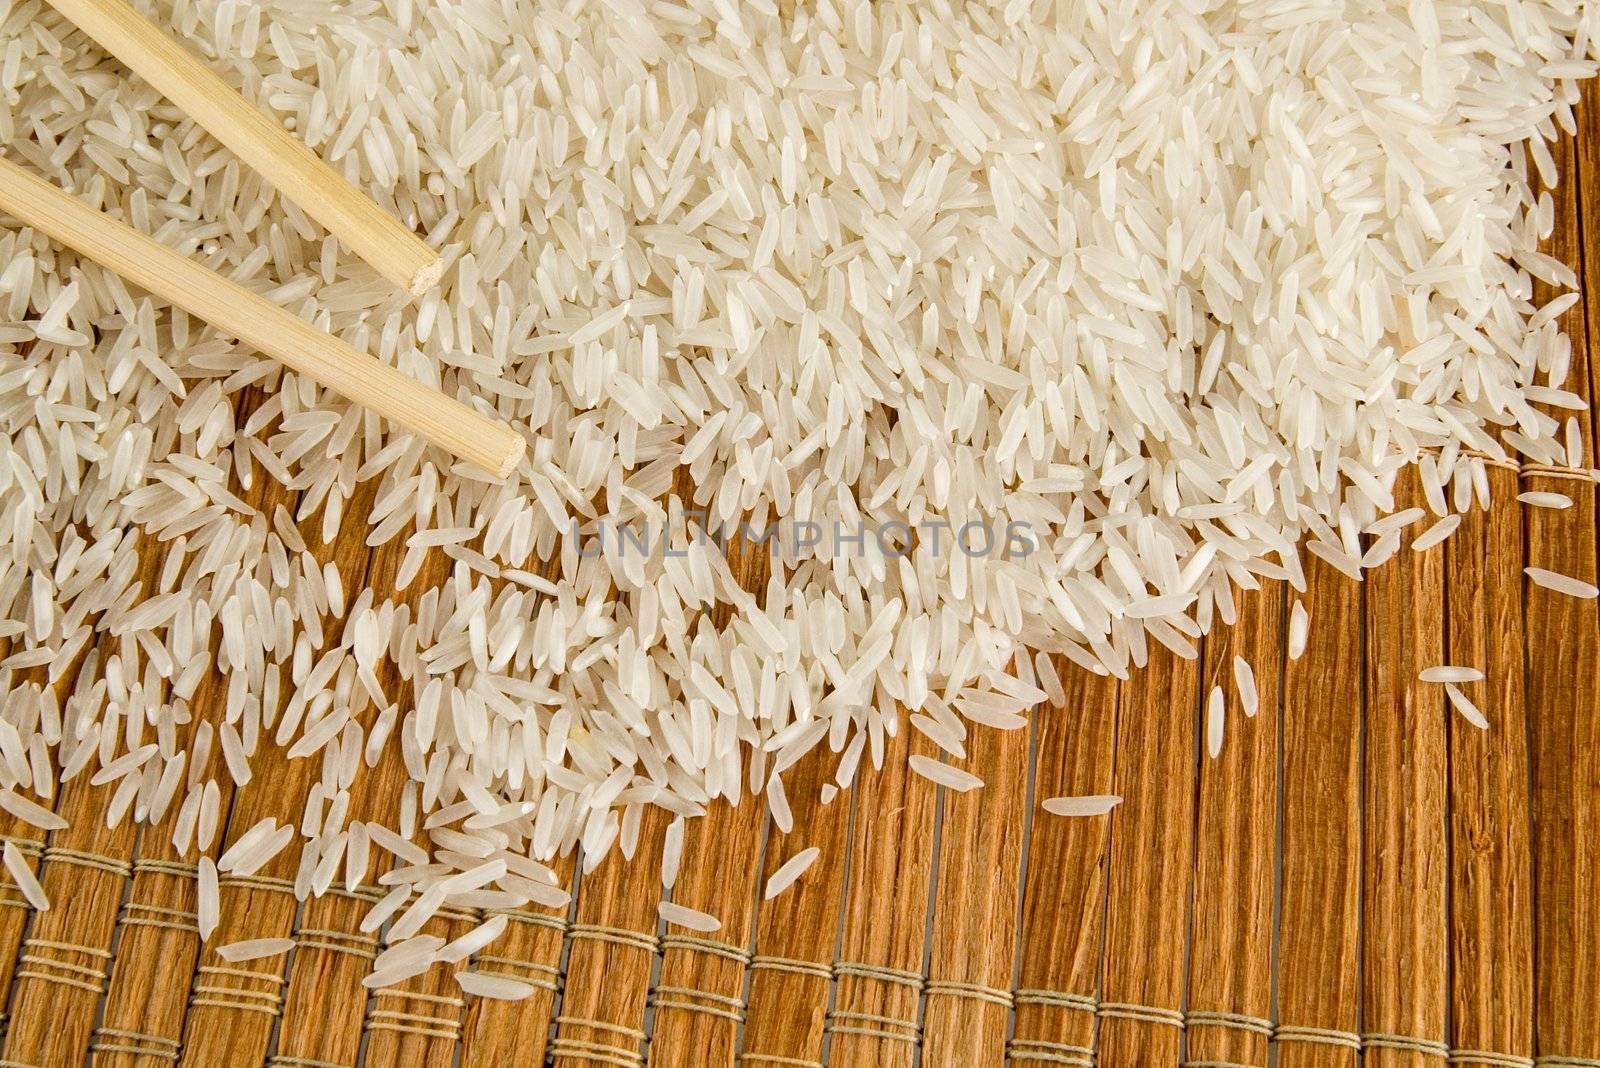 Rice by sibrikov